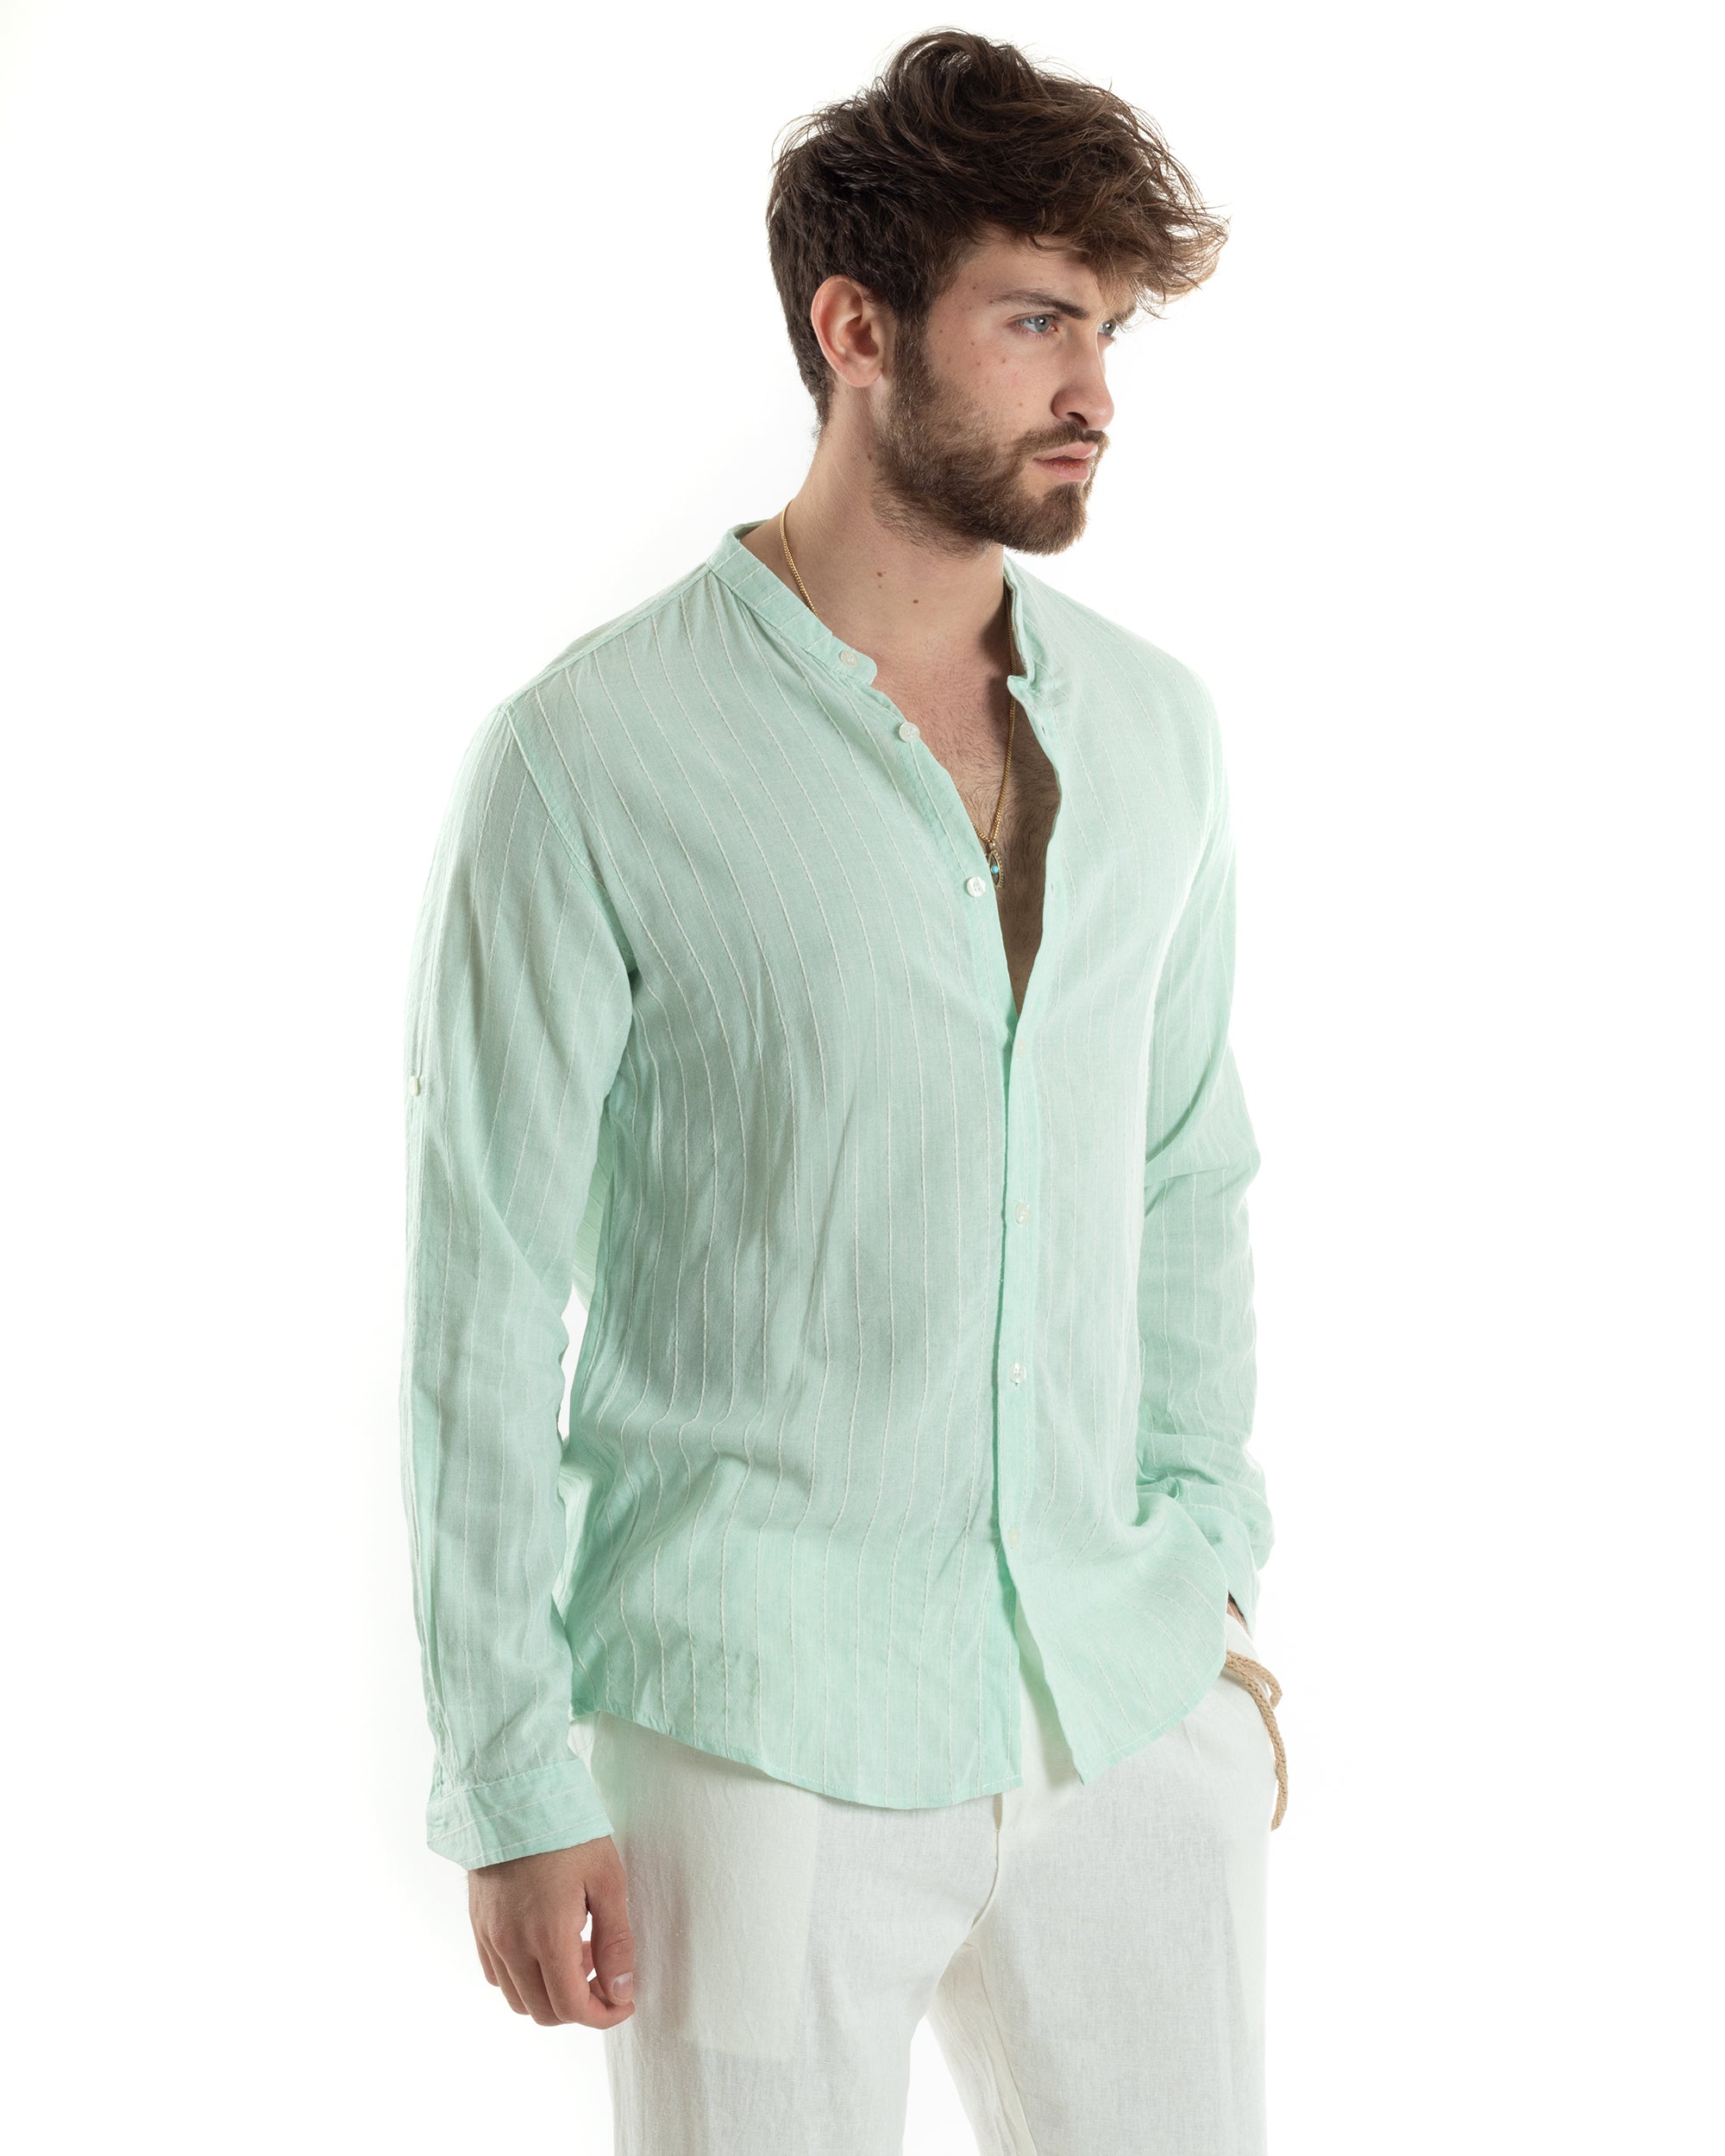 Men's Shirt Korean Collar Long Sleeve Linen Cotton Striped Beige GIOSAL-C2451A